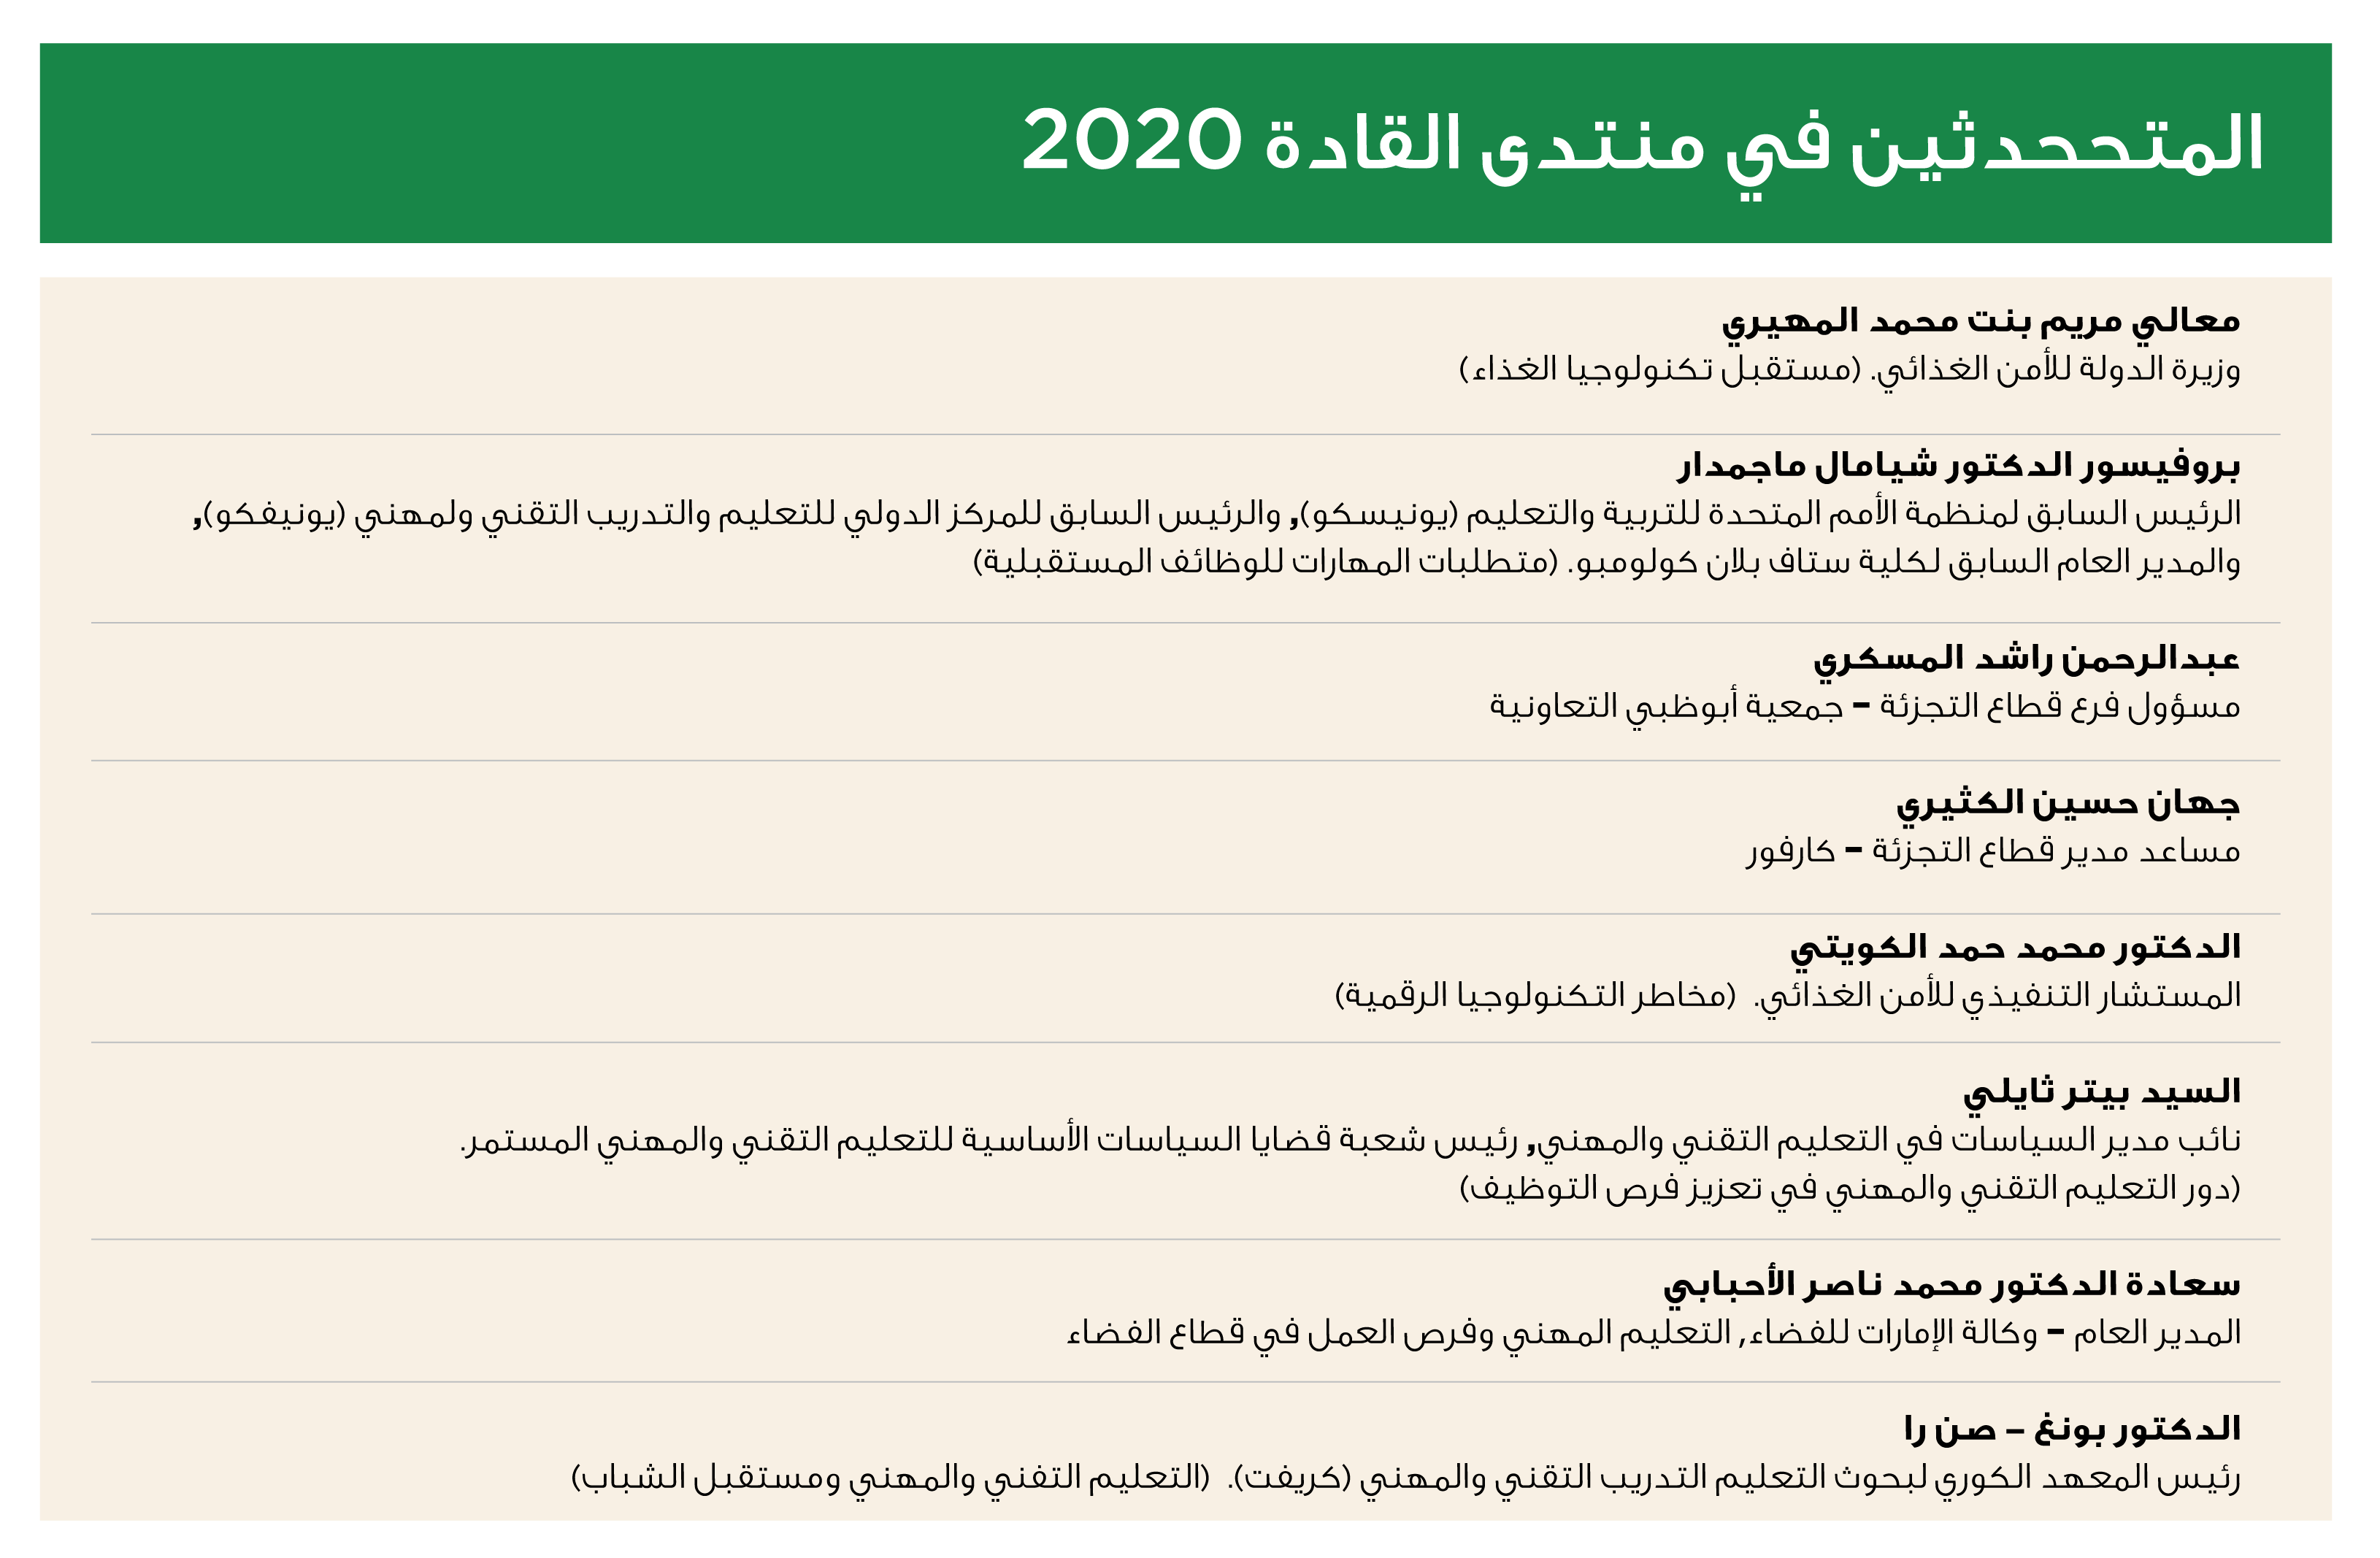 TVET-2020-Speakers_Arabic.png